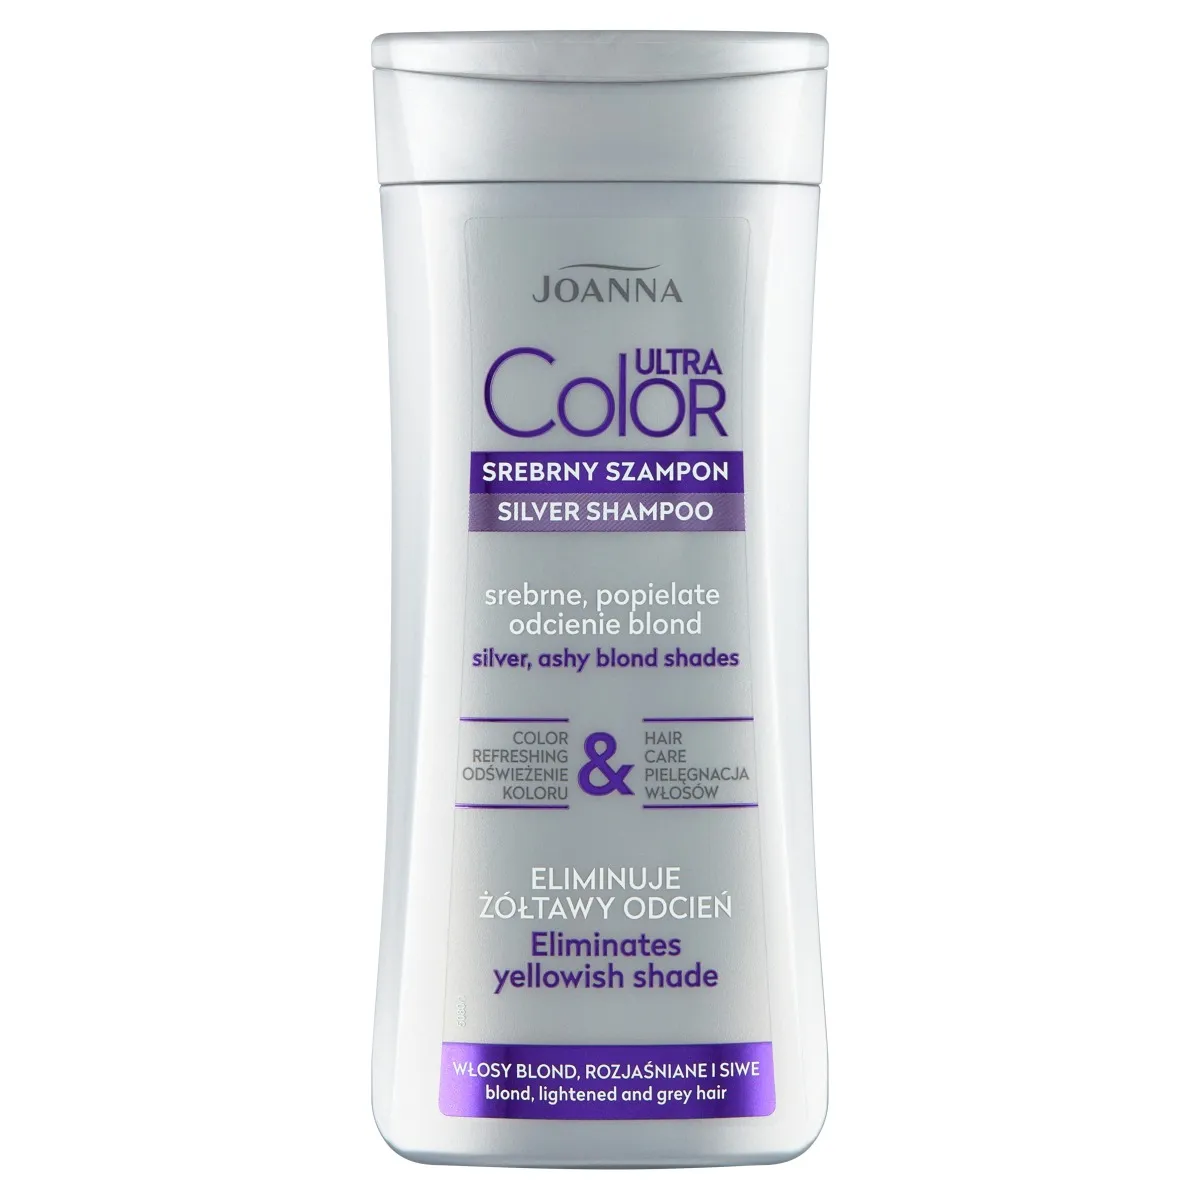 Joanna Ultra Color srebrny szampon, srebrne, popielate odcienie blond, 200 ml